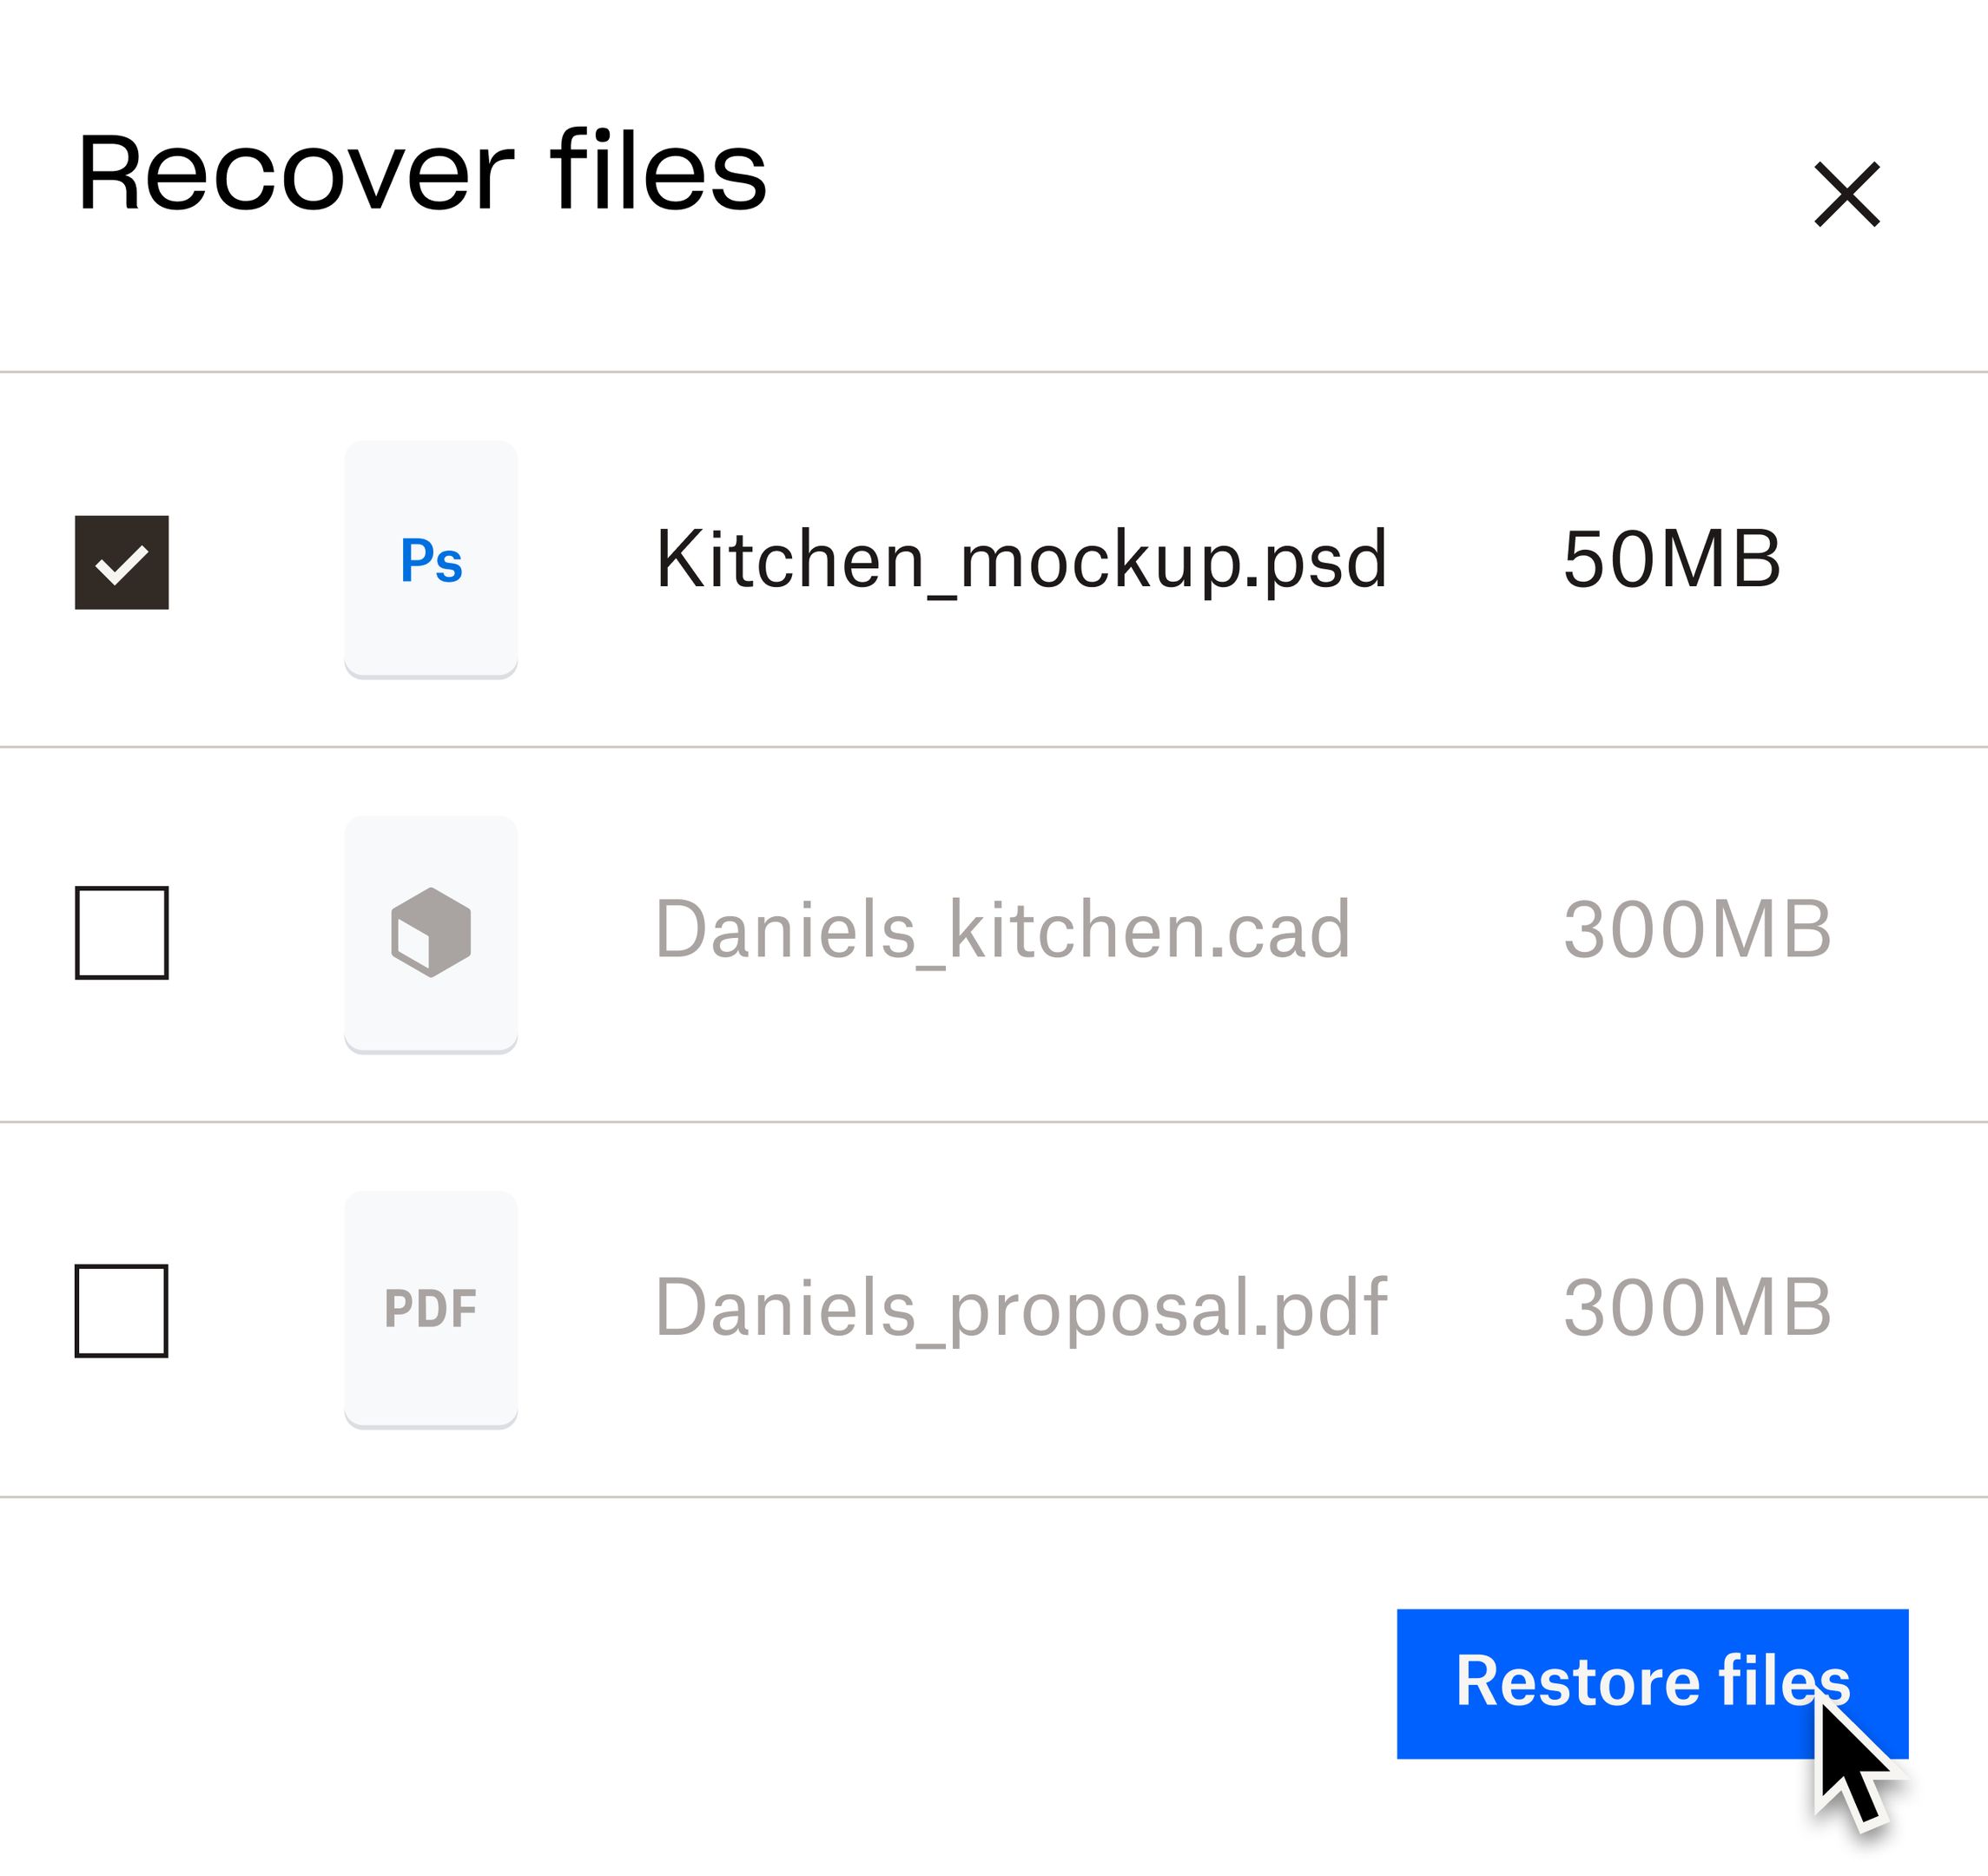 Et visuelt eksempel på processen for gendannelse af filer i dit Dropbox-cloudlager.